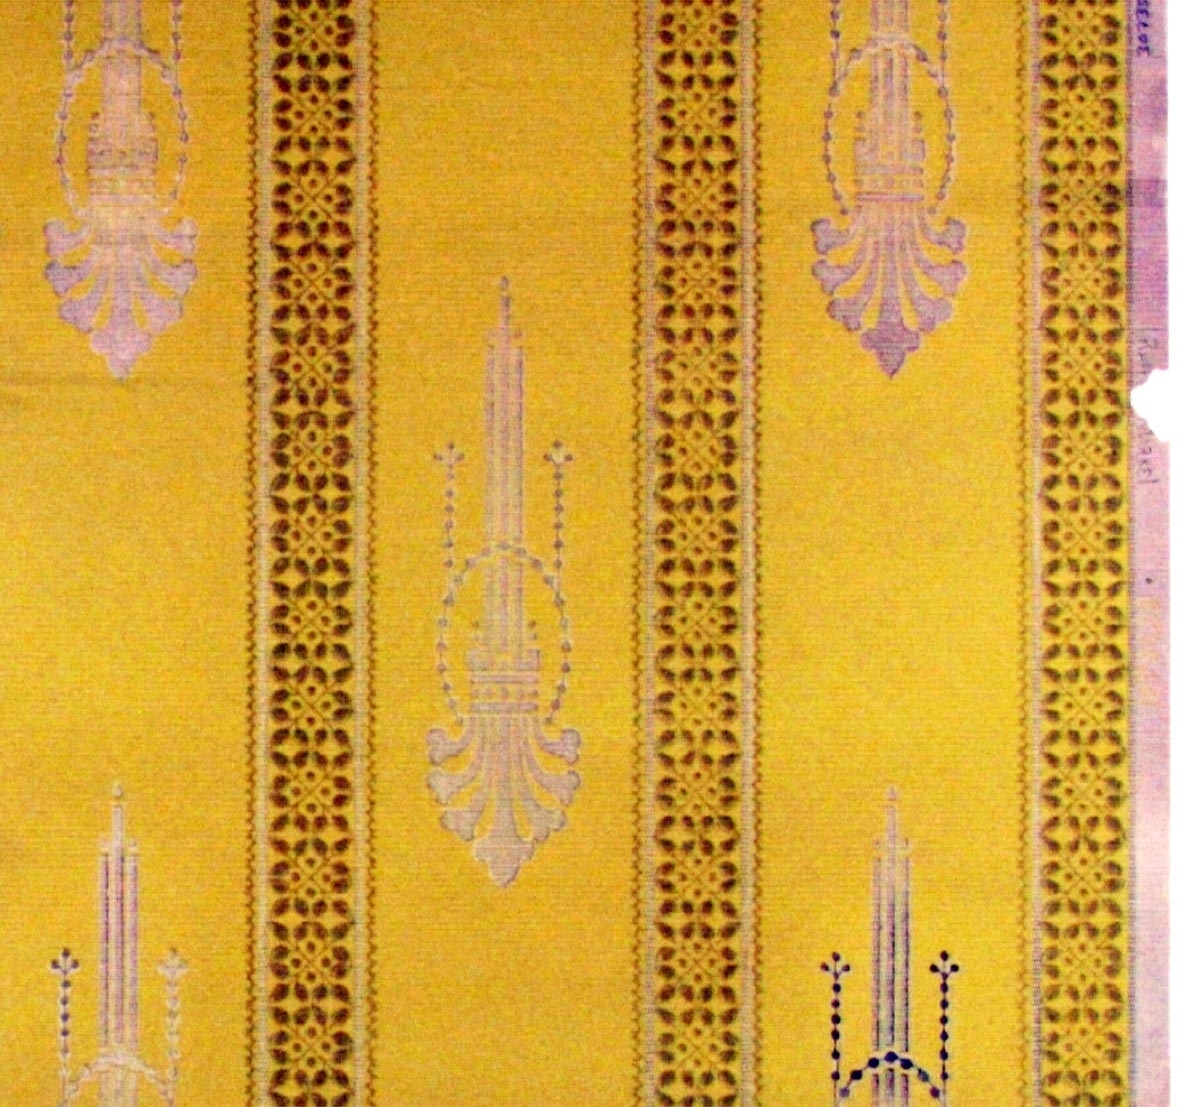 Randmönster med franska liljan/girlang i diagonalupprepning. Tryck i guld samt i två senapsgula nyanser.